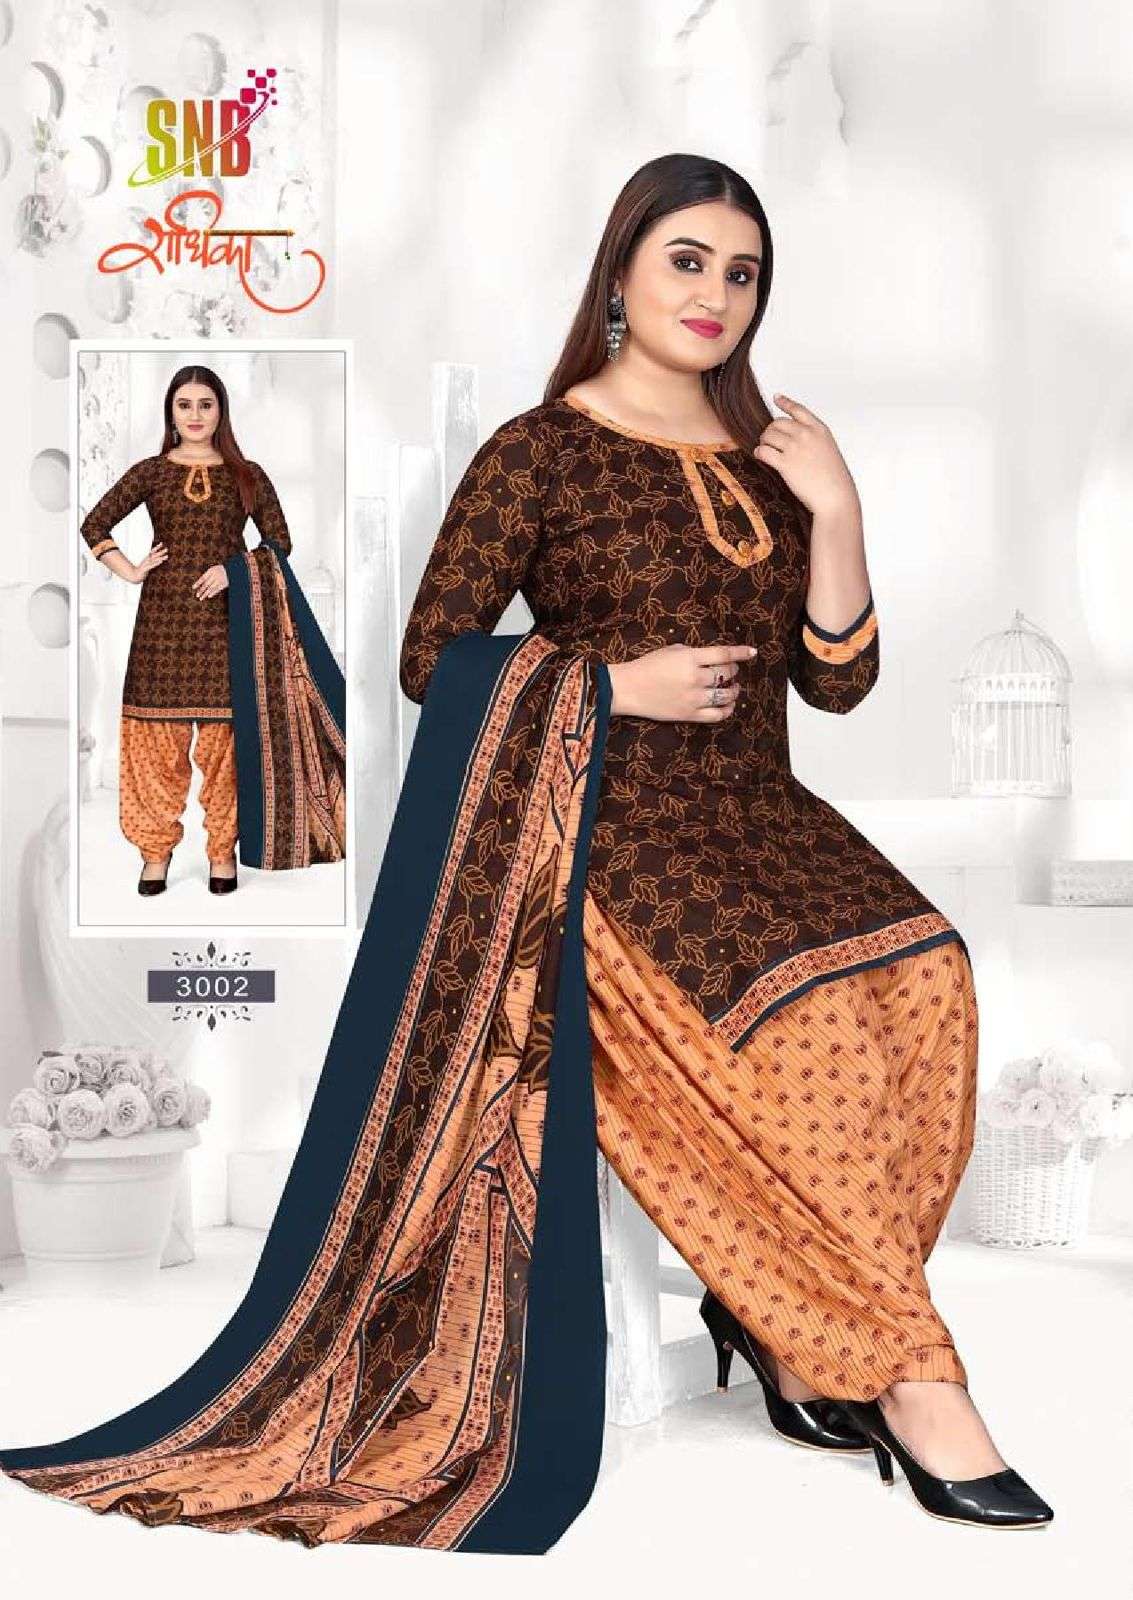 Snb Radhika Vol 3 Soft Cootn Patiyala Salwar Suit Wholesale catalog